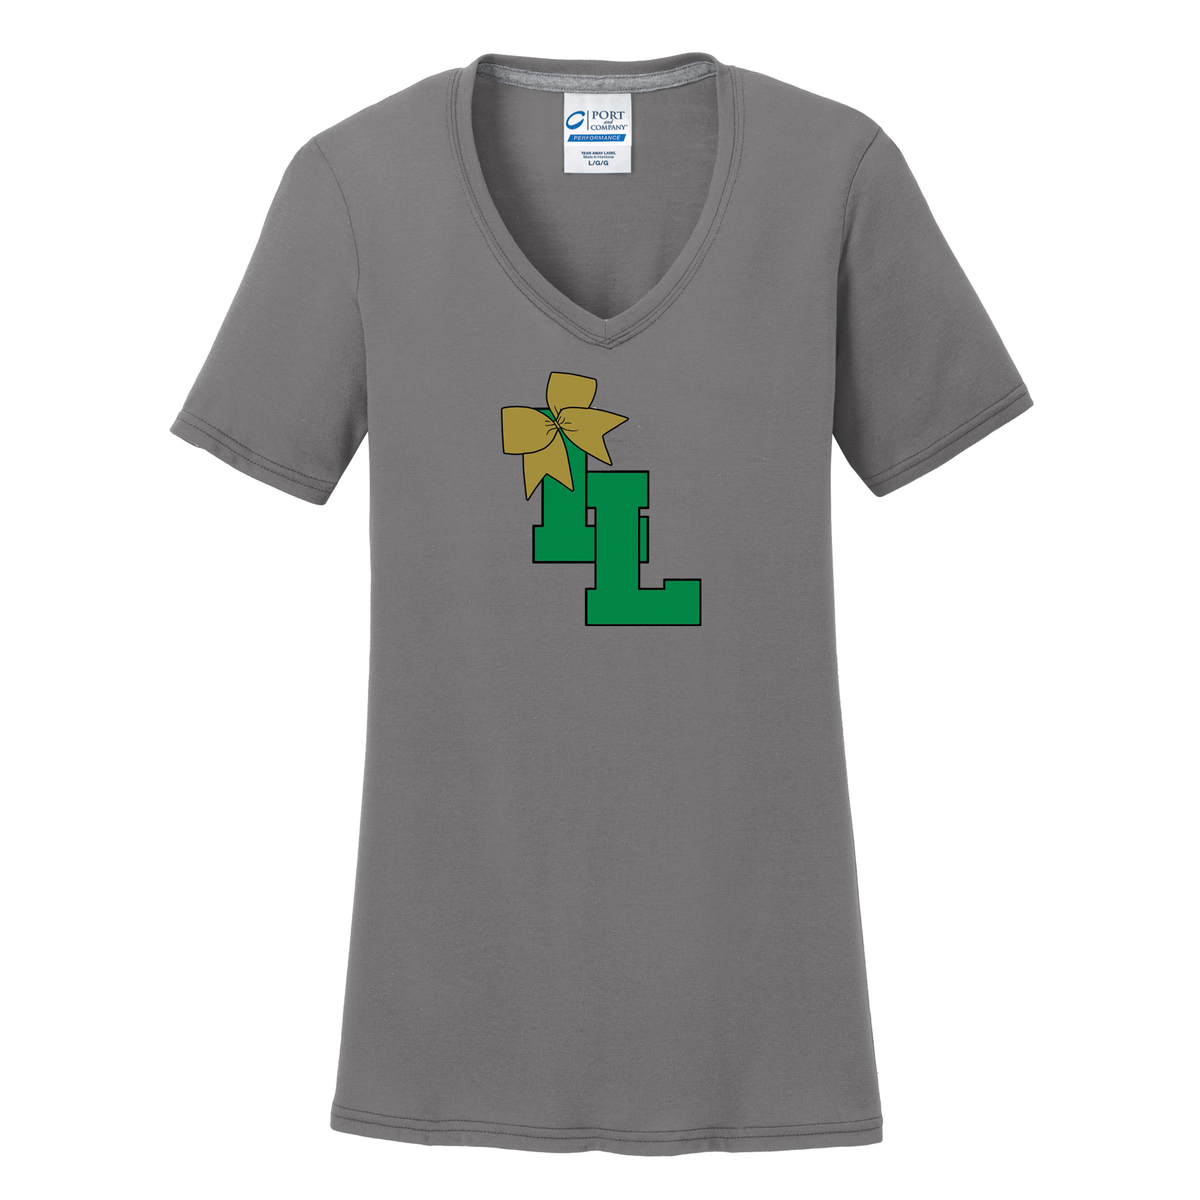 Lanierland Lions Cheer Women's T-Shirt